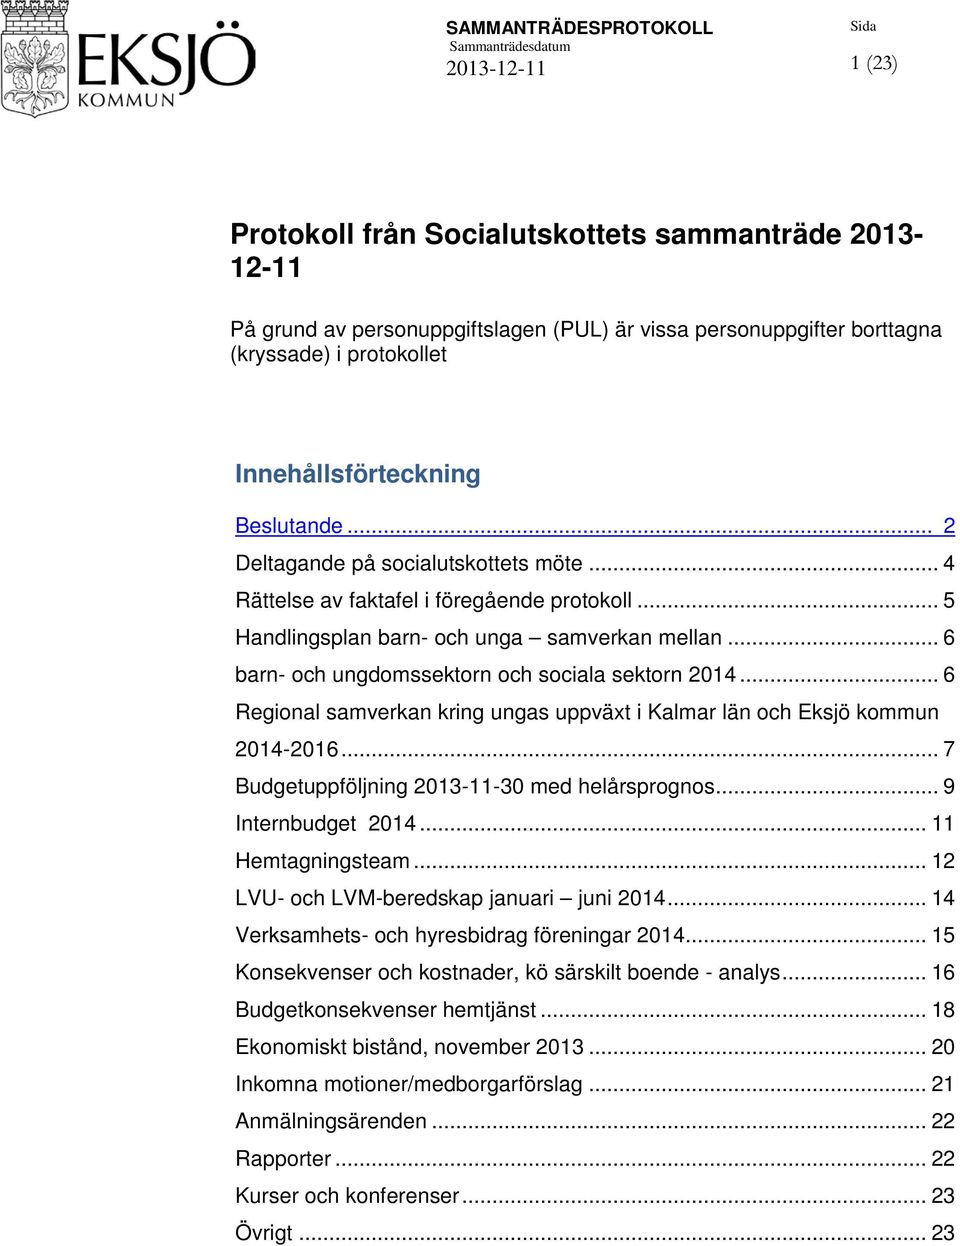 .. 6 Regional samverkan kring ungas uppväxt i Kalmar län och Eksjö kommun 2014-2016... 7 Budgetuppföljning 2013-11-30 med helårsprognos... 9 Internbudget 2014... 11 Hemtagningsteam.